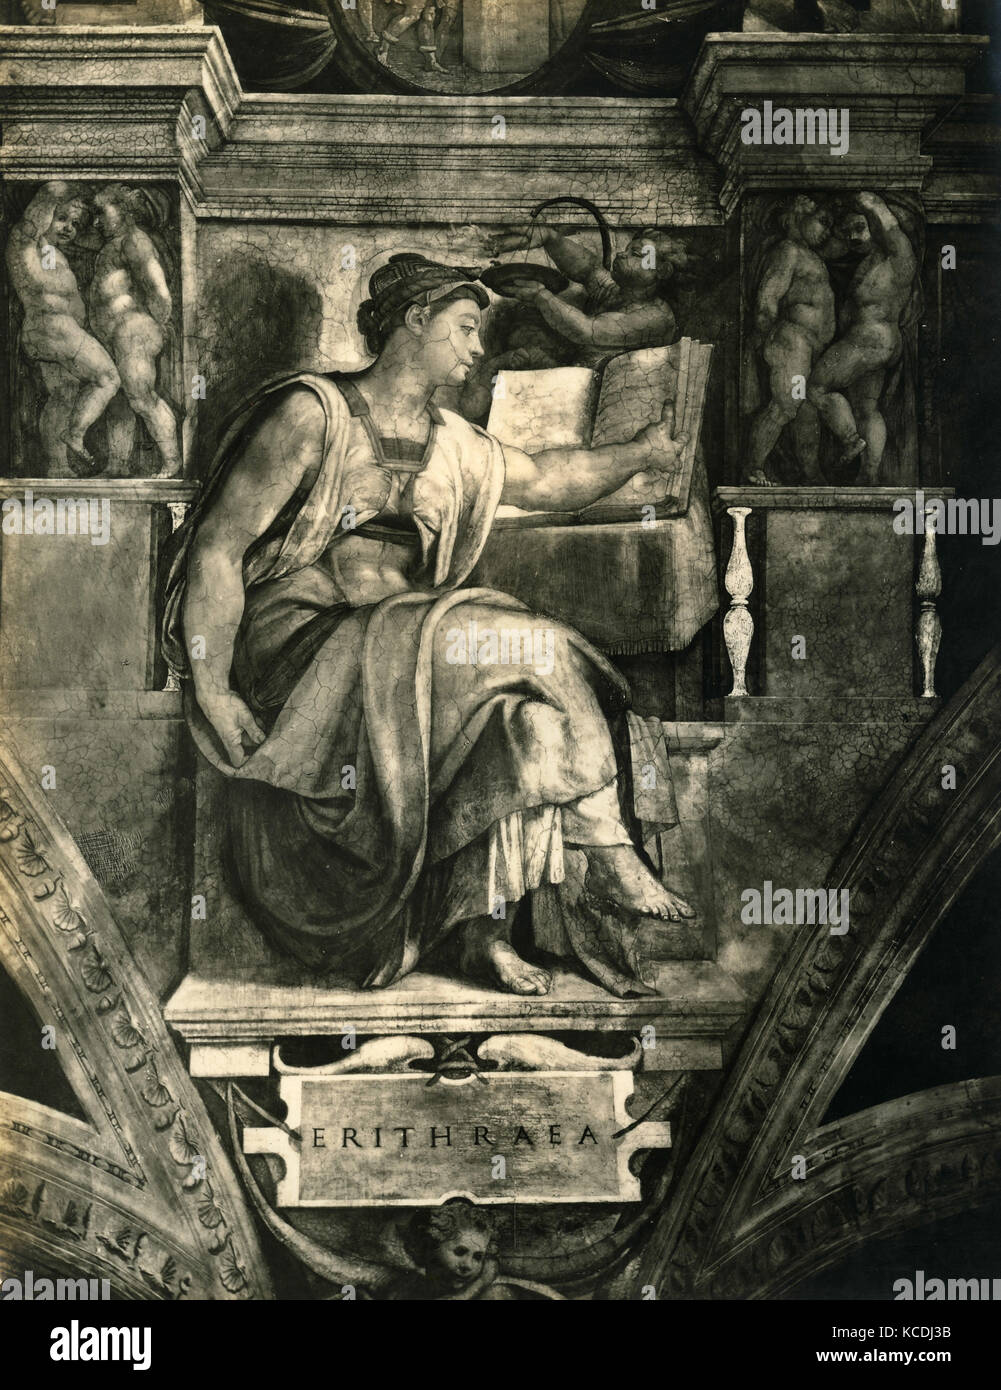 Erithrean Sybil, Fresko von Michelangelo, Sixtinische Kapelle Stockfoto